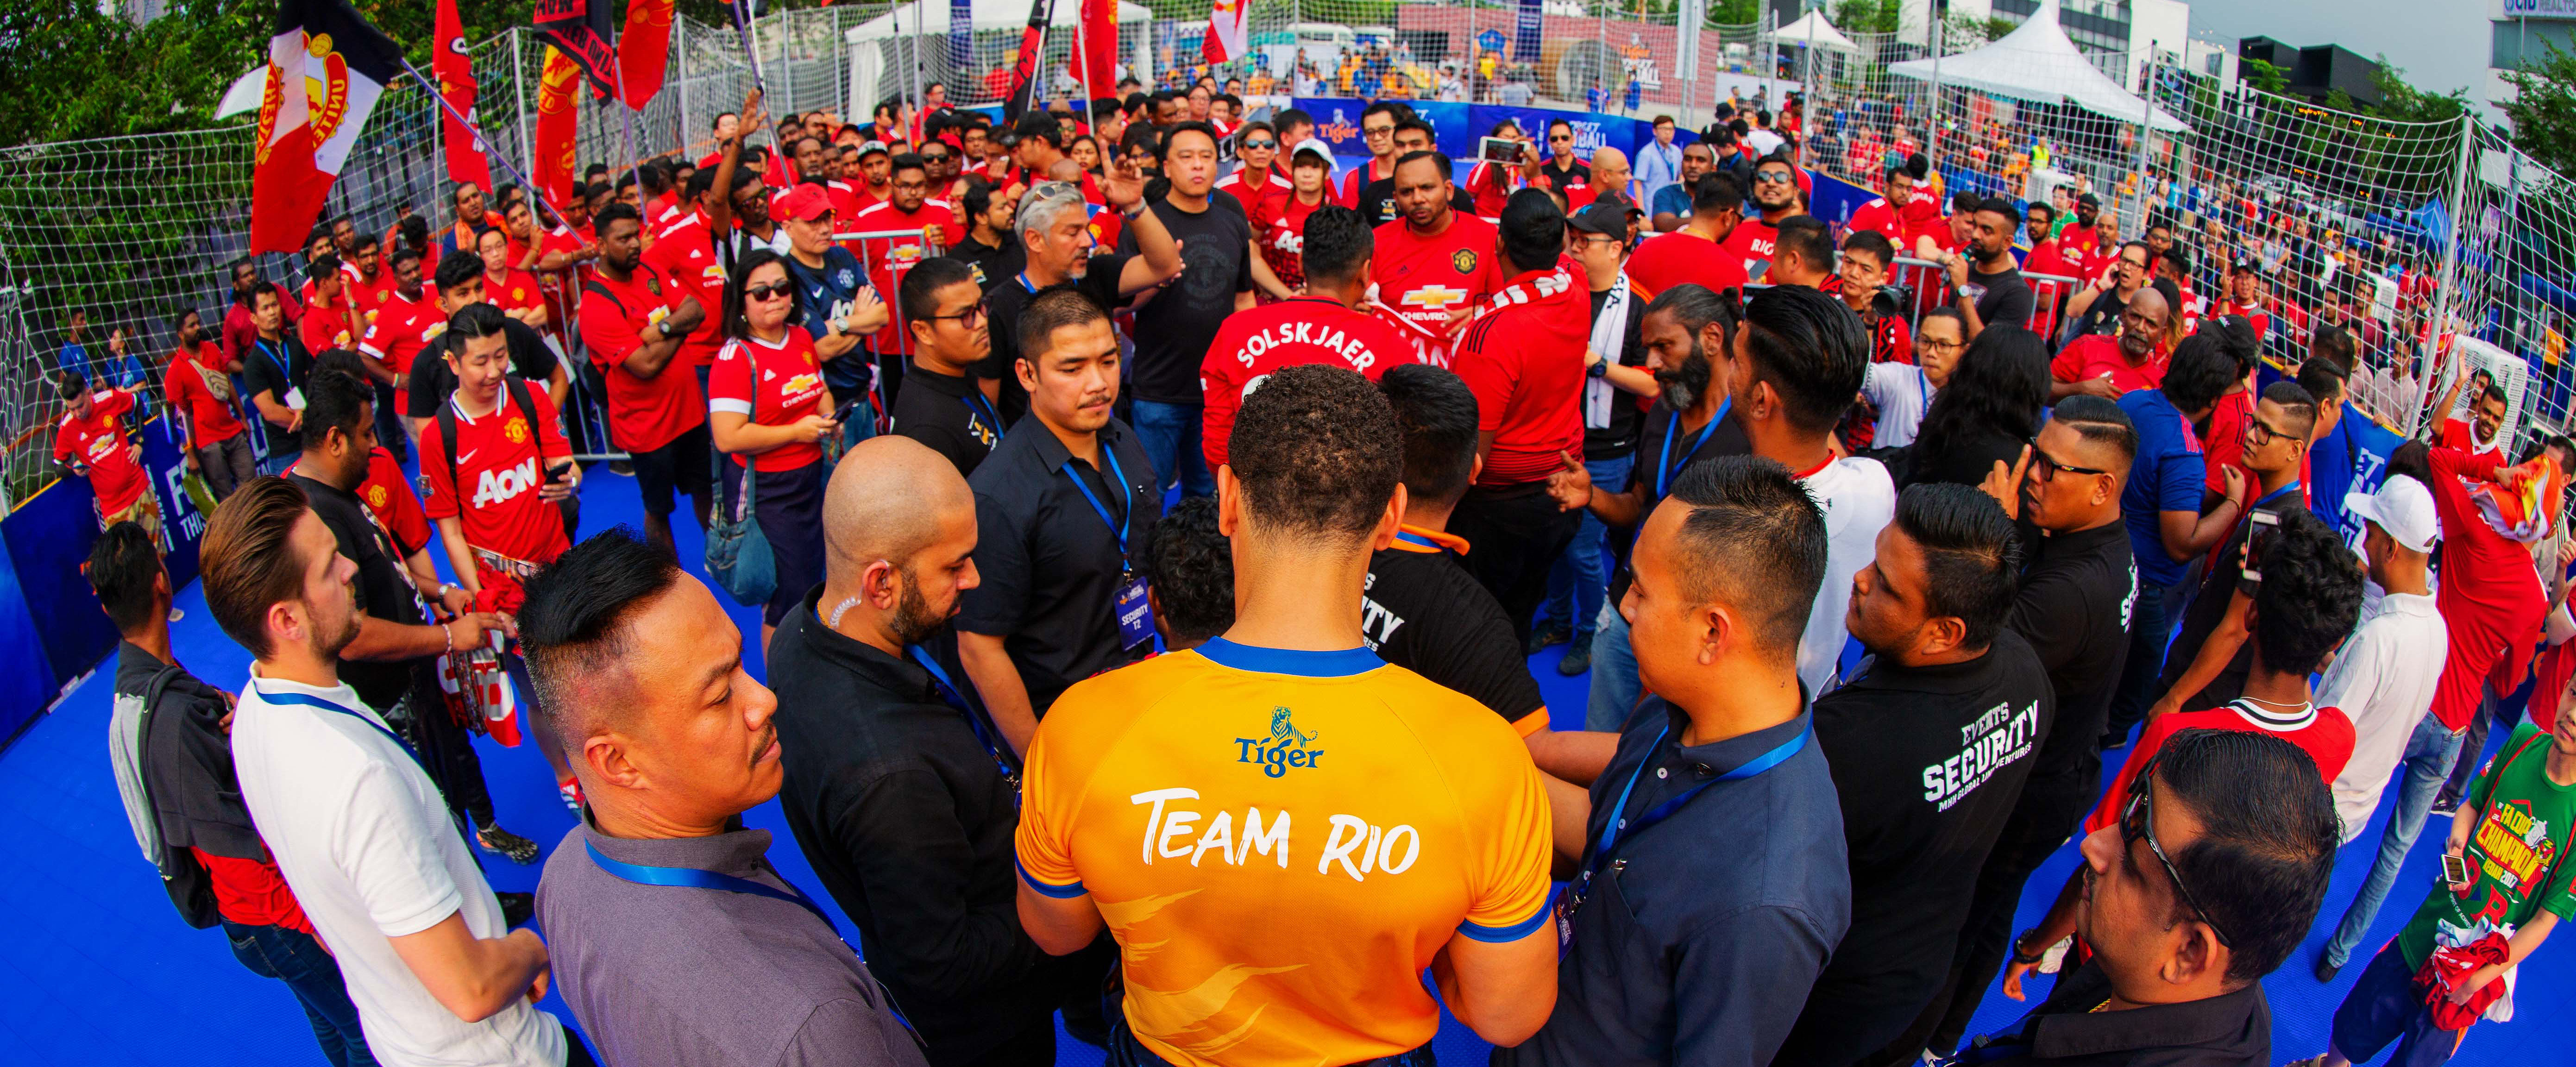 Rio Ferdinand meeting fans at Tiger Street Football Festival 2019_01-v3